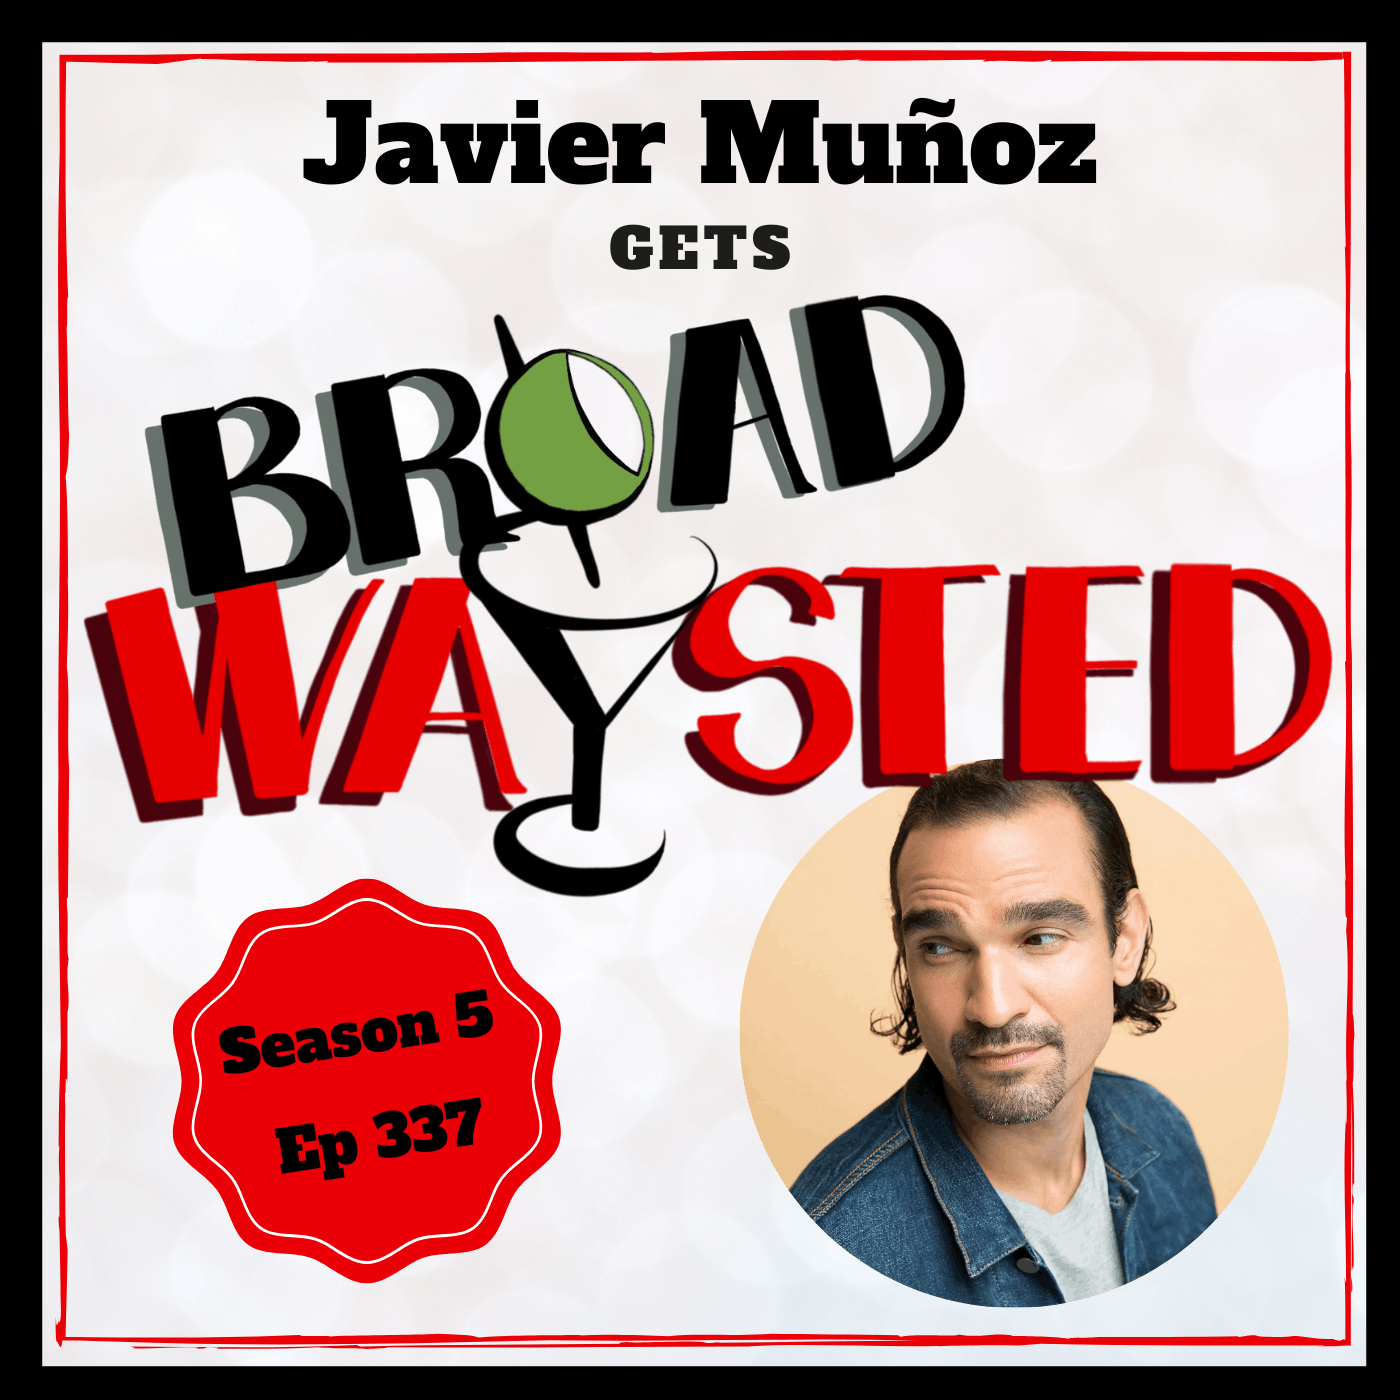 Episode 337: Javier Muñoz gets Broadwaysted!